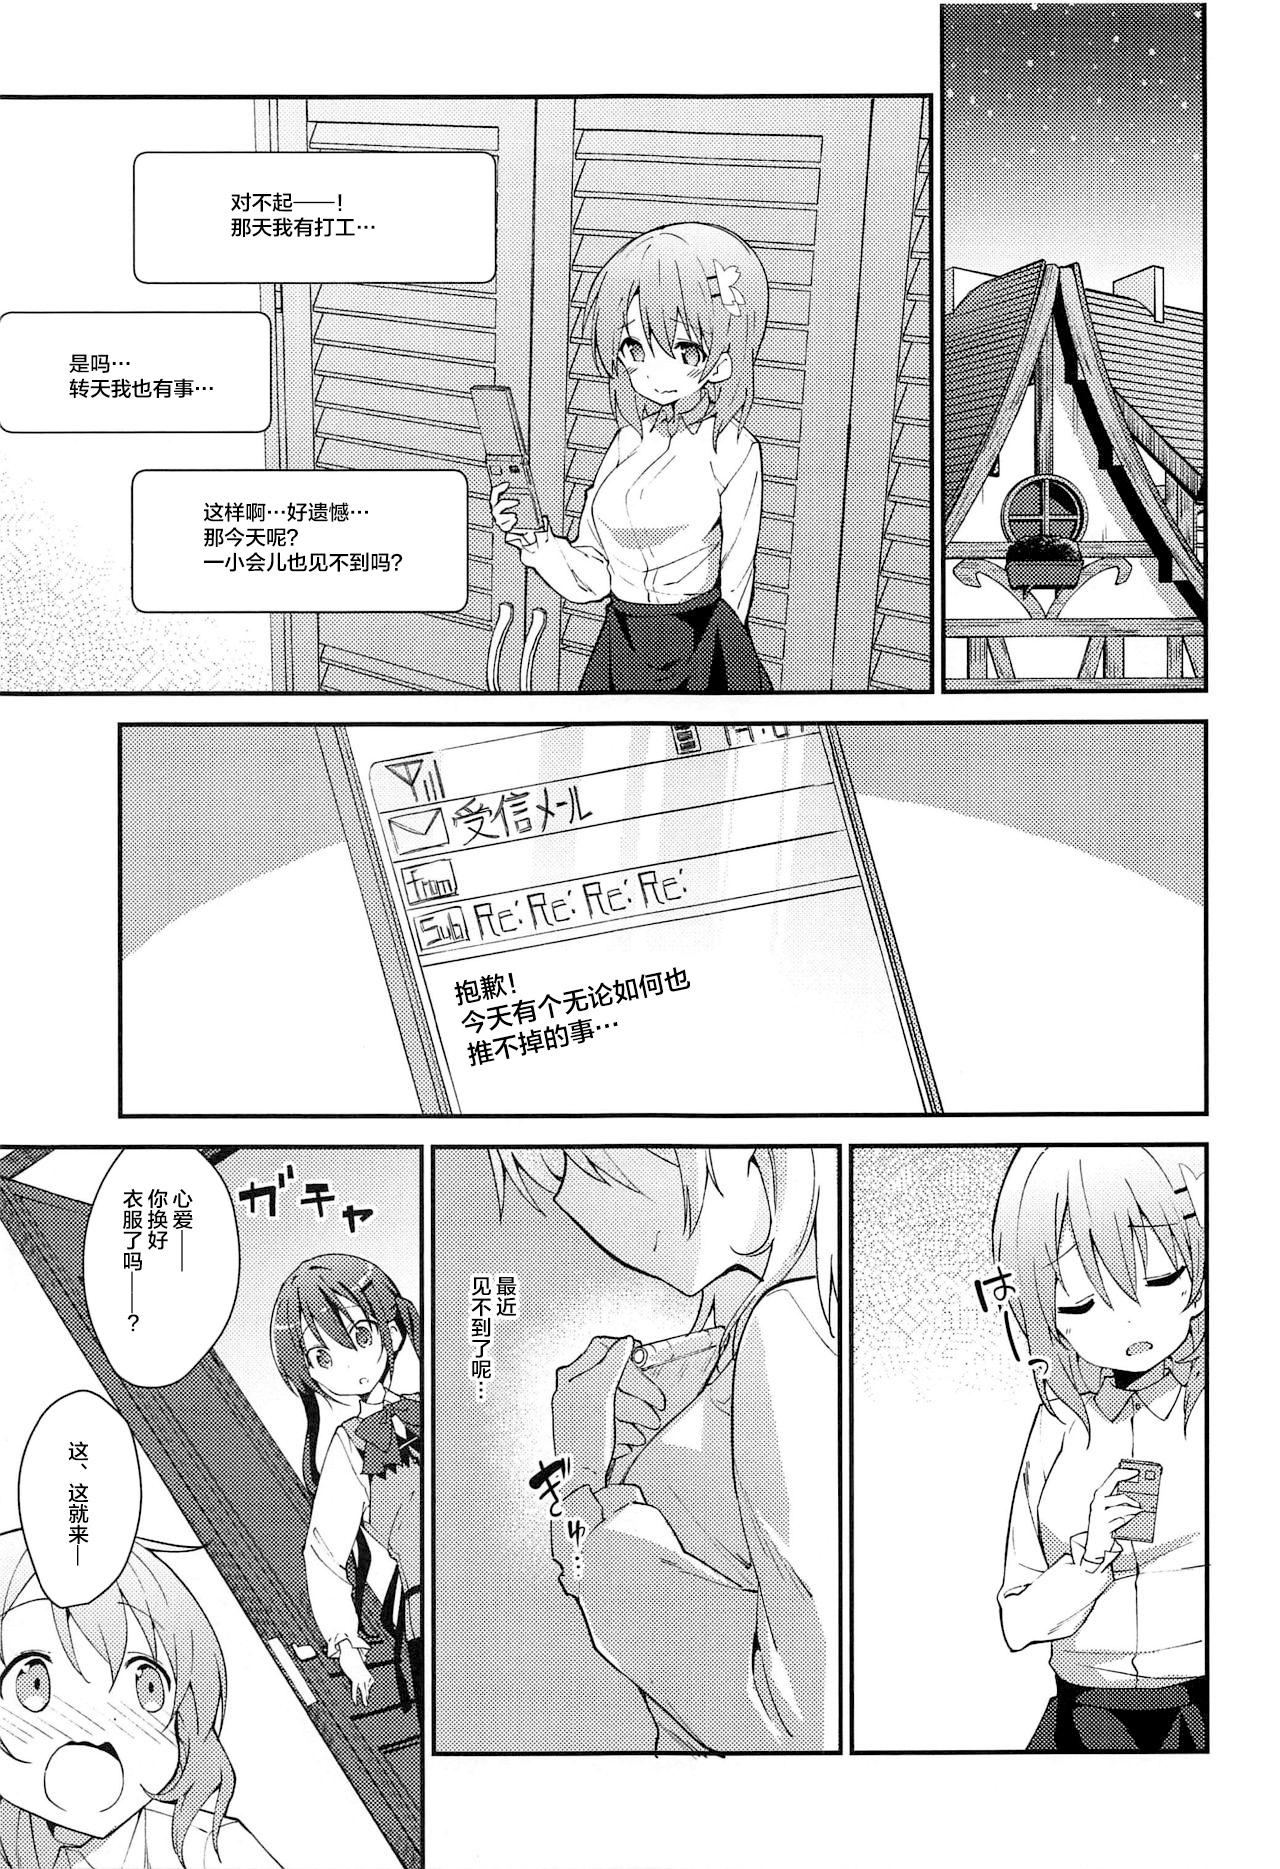 Kiss Attakai Kokoa wa Ikaga desu ka? - How about warm cocoa? - Gochuumon wa usagi desu ka Free Blow Job - Page 5